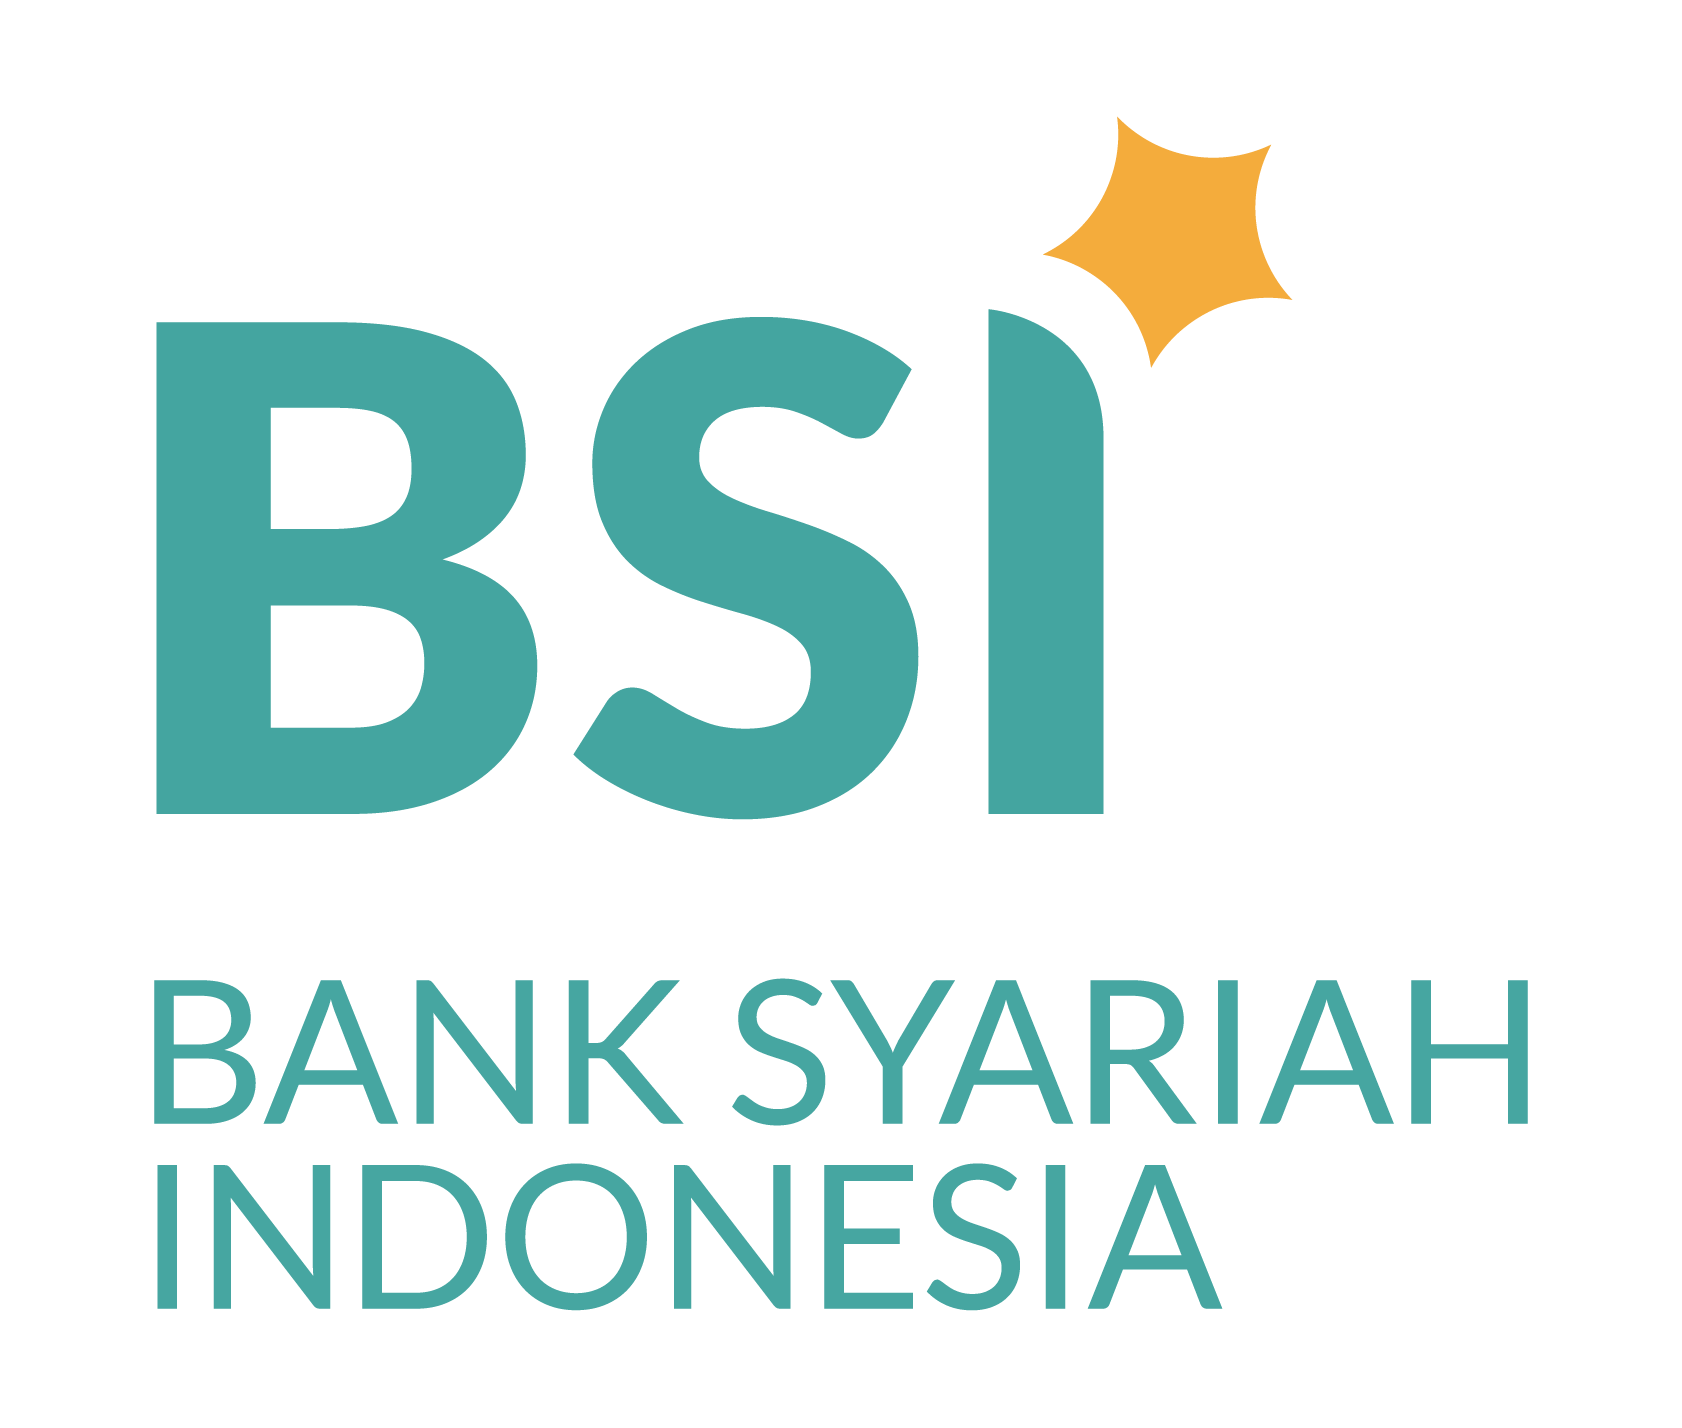 BSI Bank Syariah Indonesia